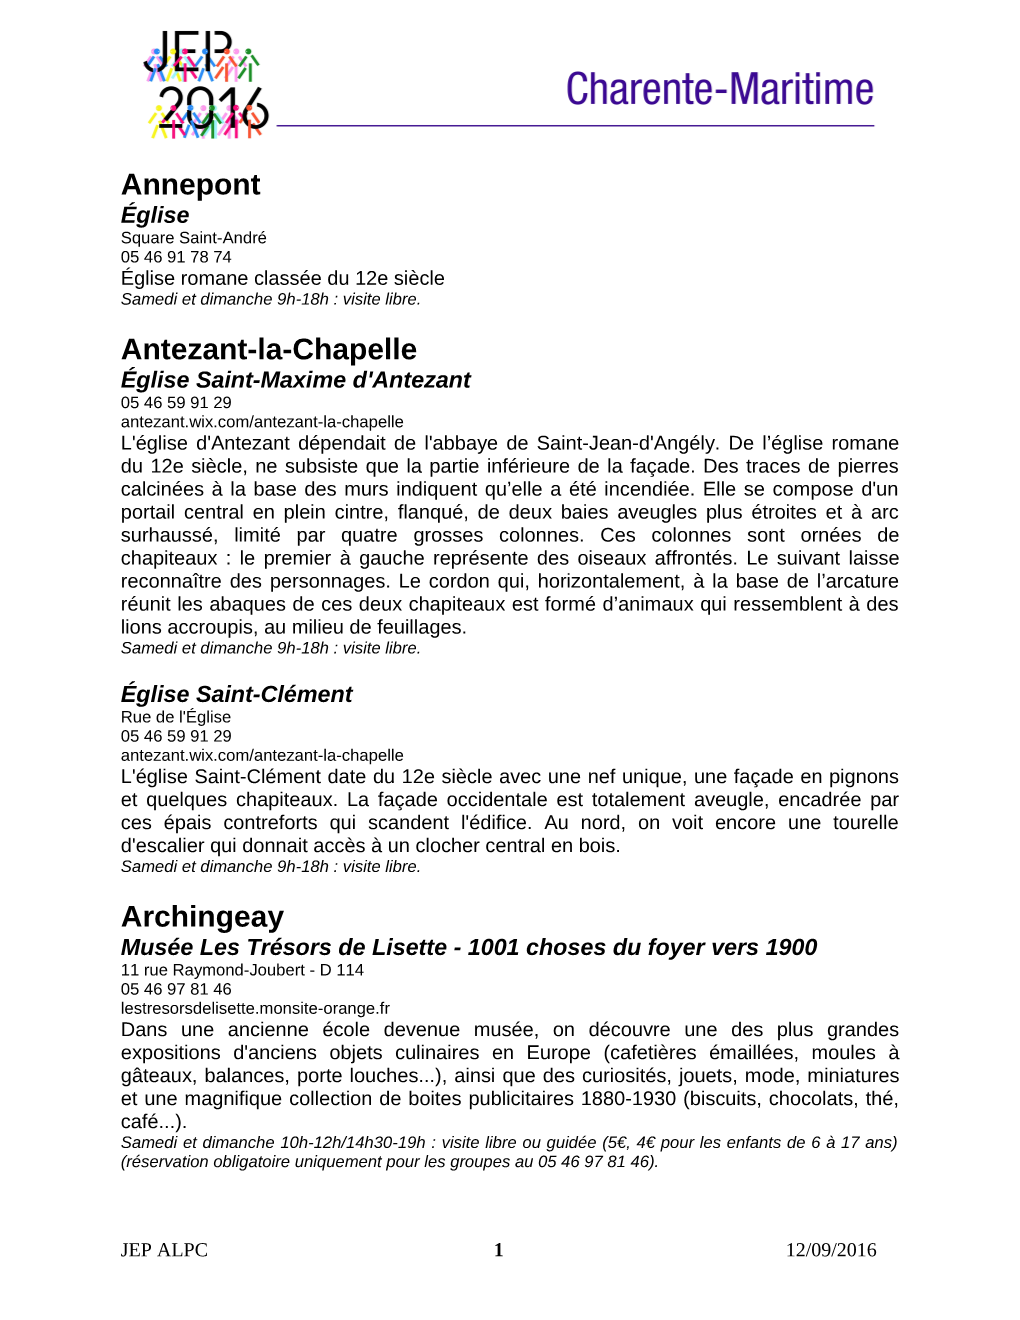 Annepont Antezant-La-Chapelle Archingeay